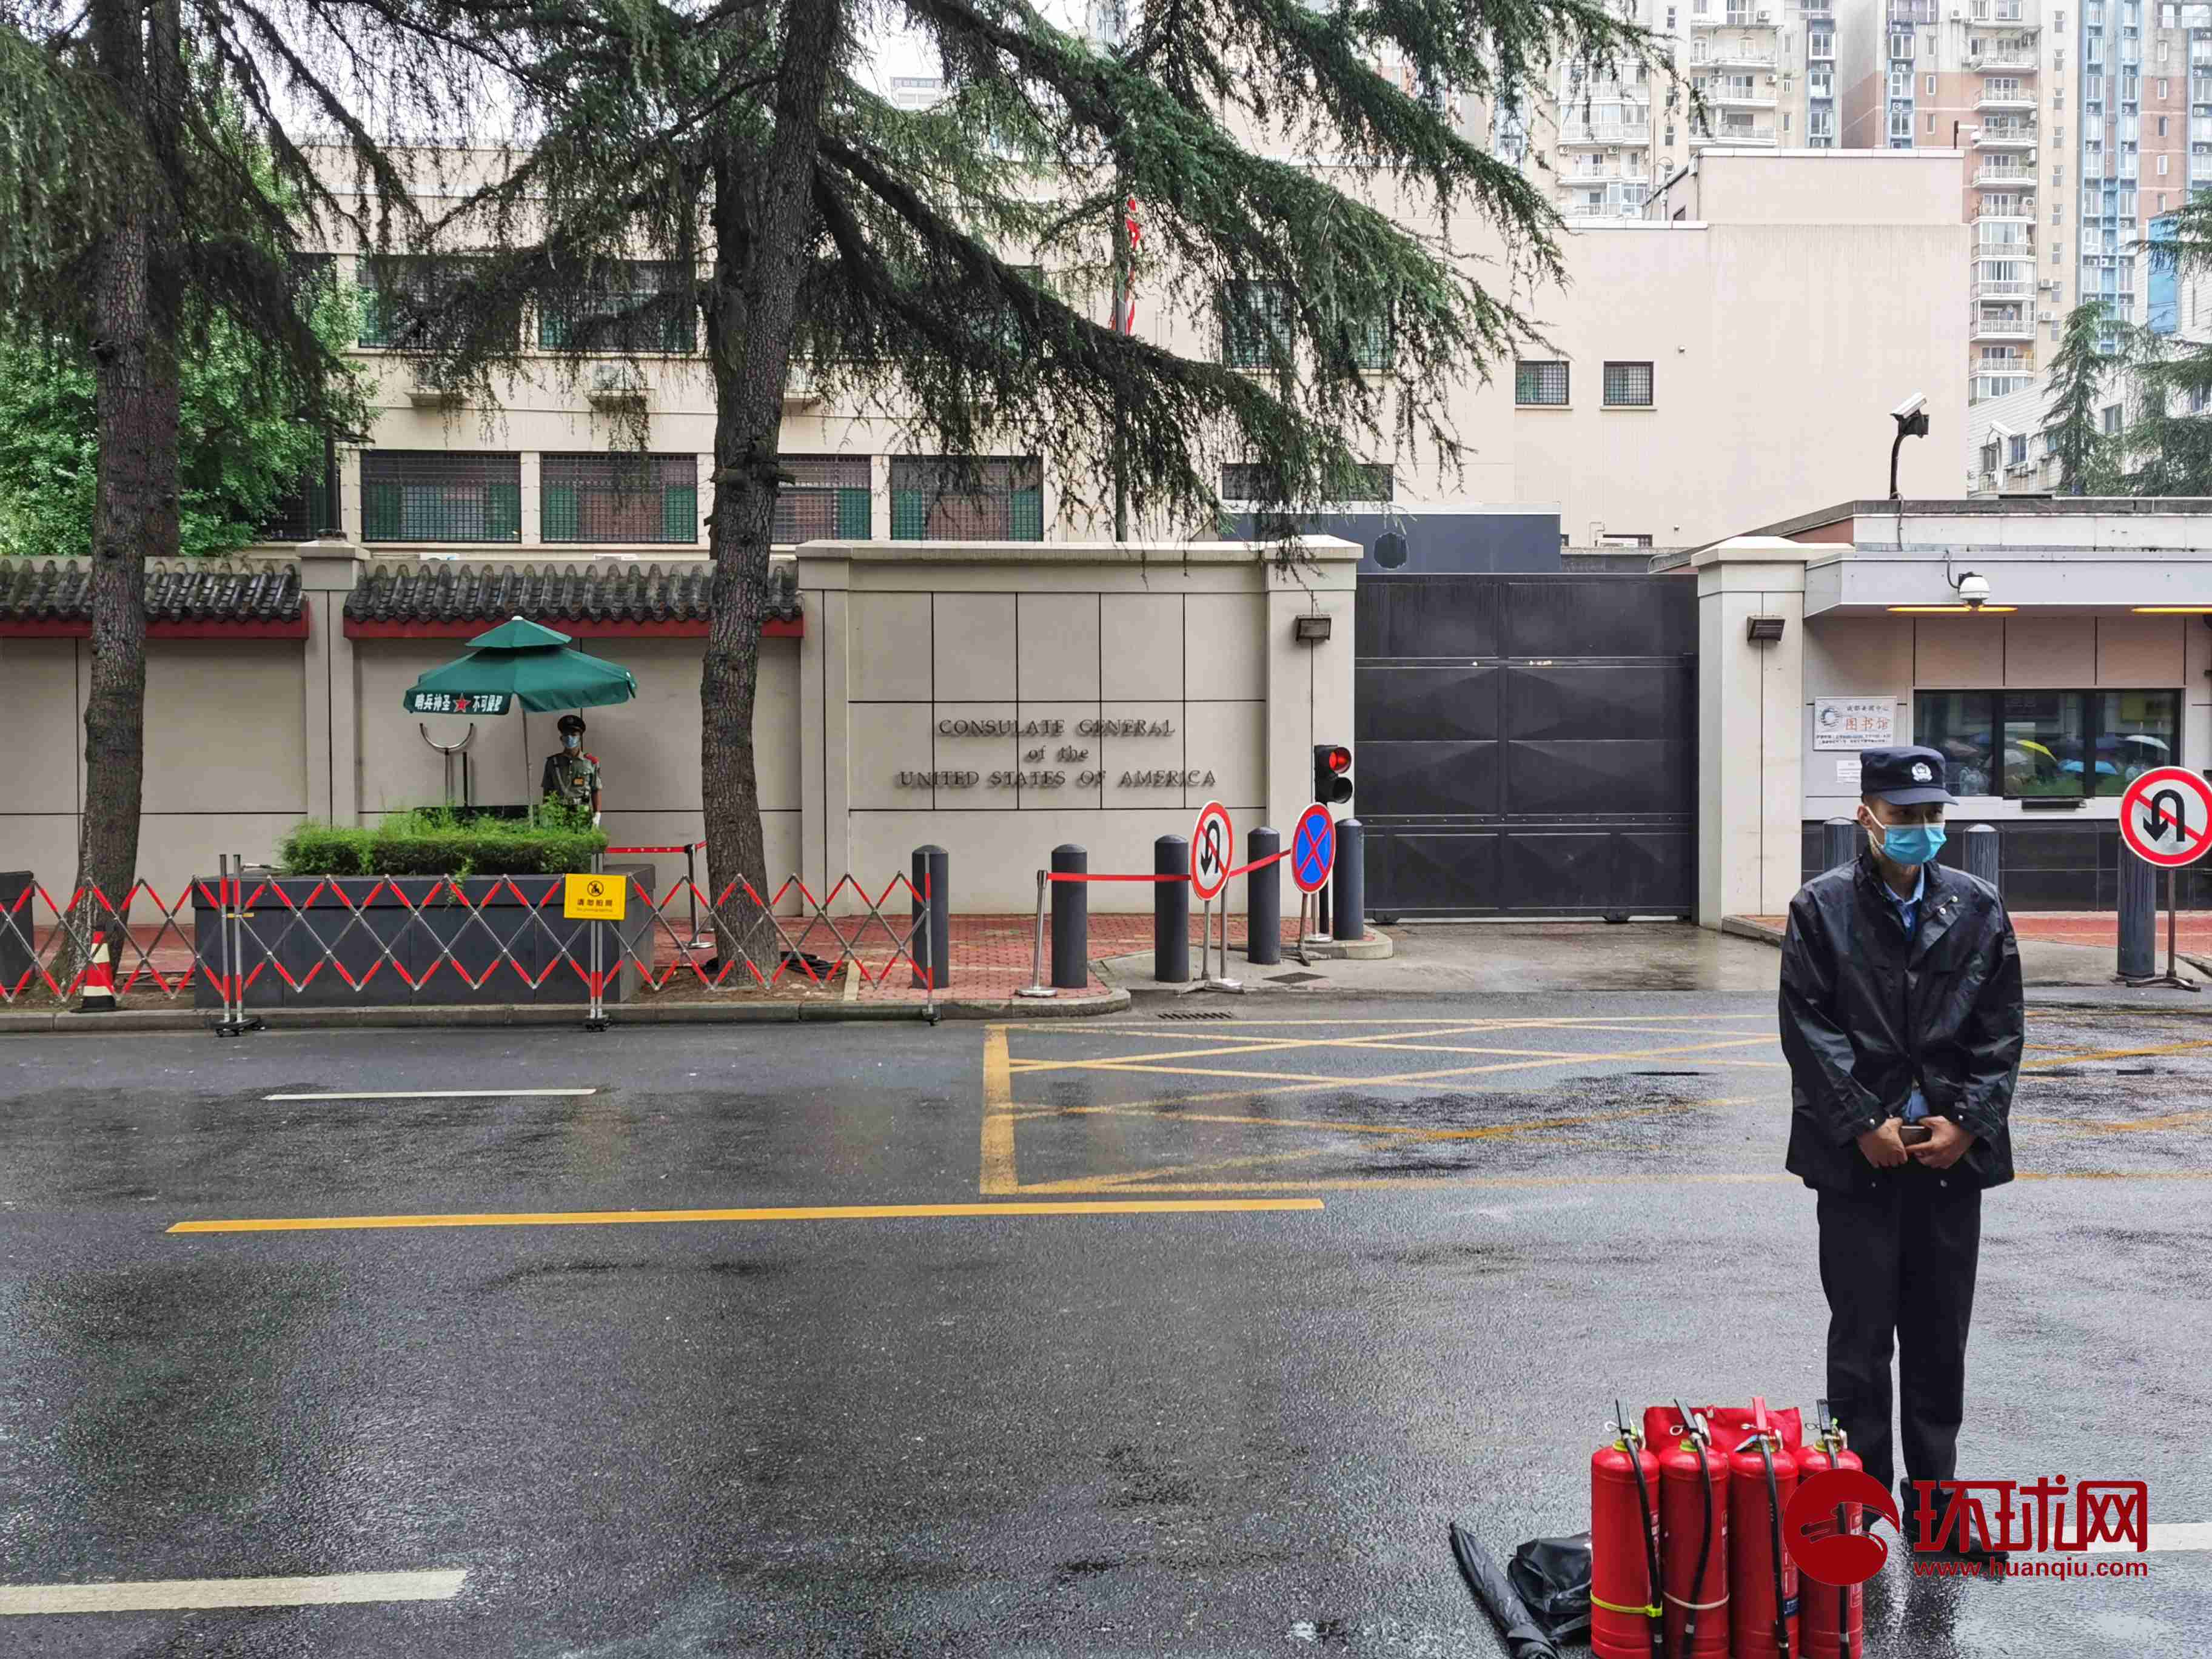 4 记者探访美国驻成都总领事馆:警方设置硬隔离